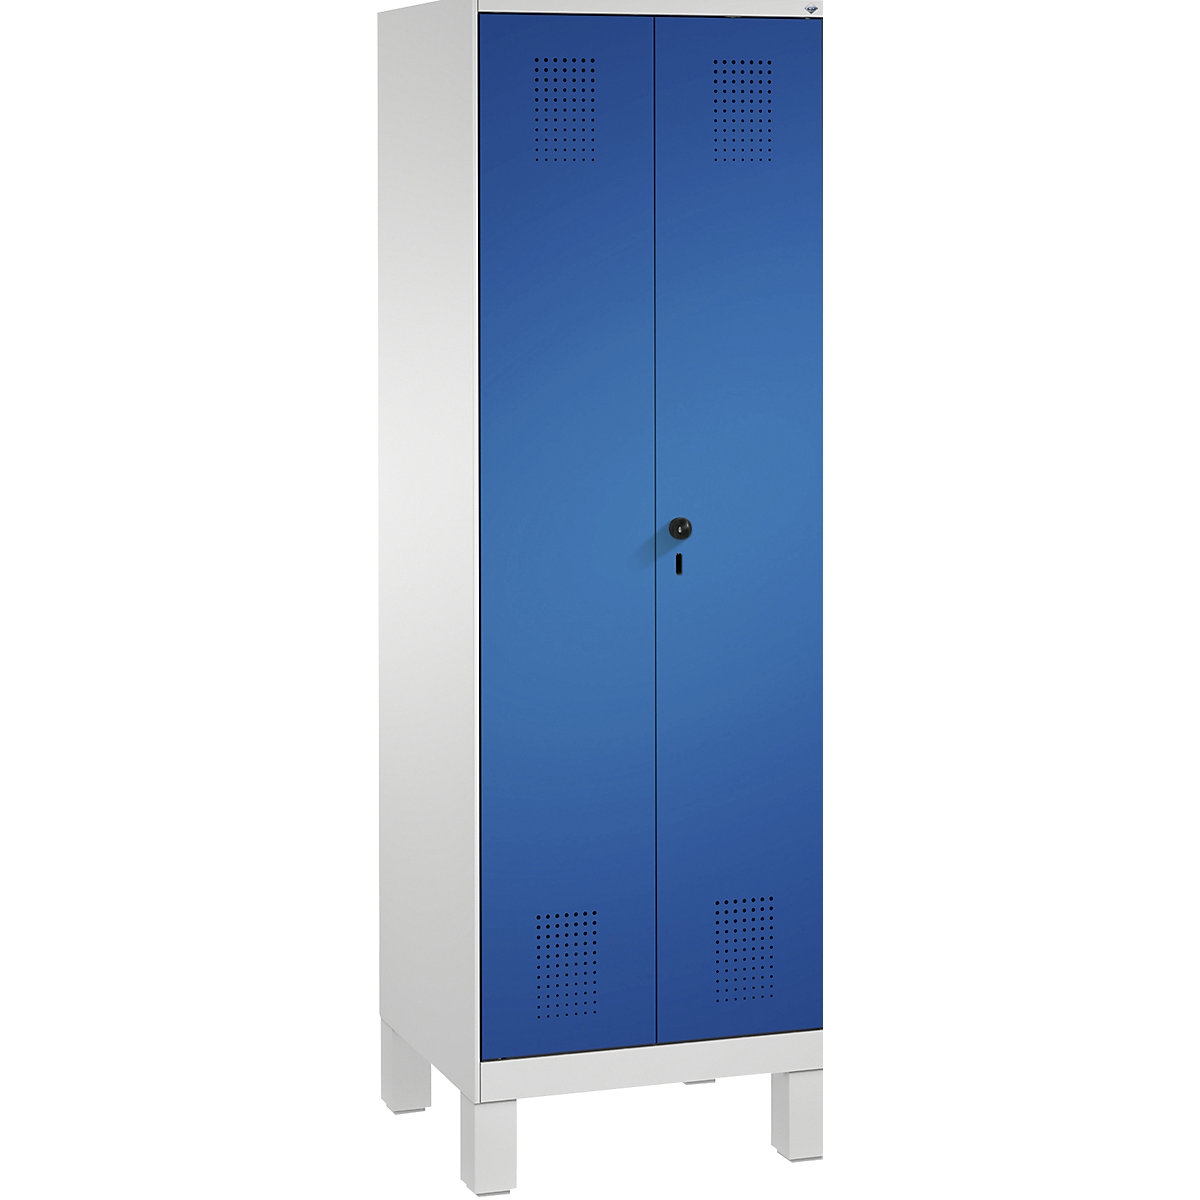 EVOLO takarítószer-/készüléktároló szekrény – C+P, rövidített válaszfal, 6 akasztó, rekeszek 2 x 300 mm, lábakkal, világosszürke / enciánkék-4